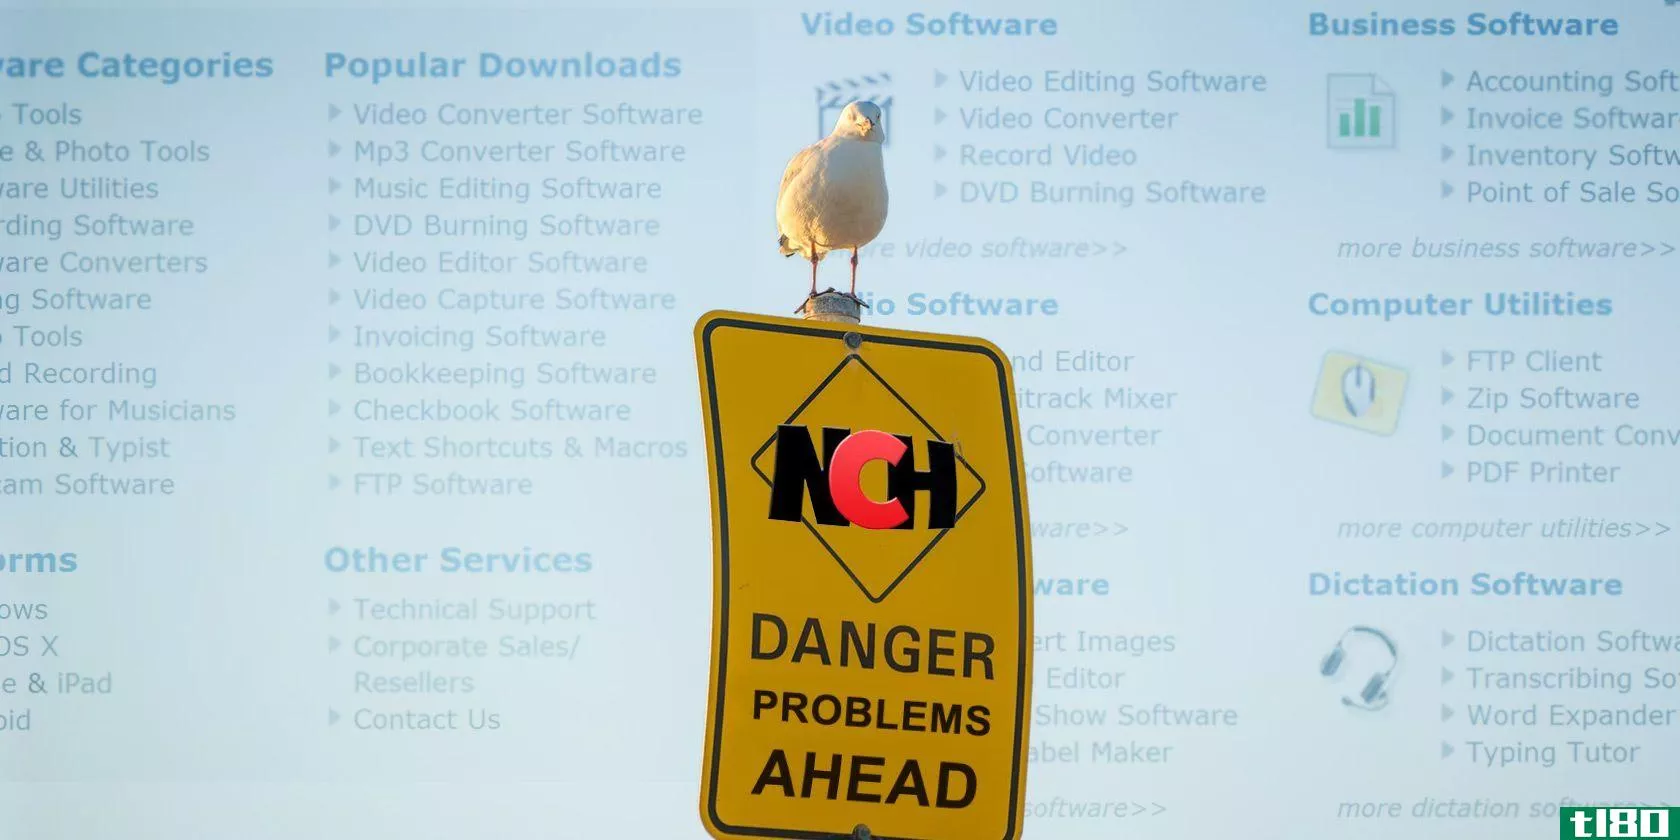 nch-software-warning